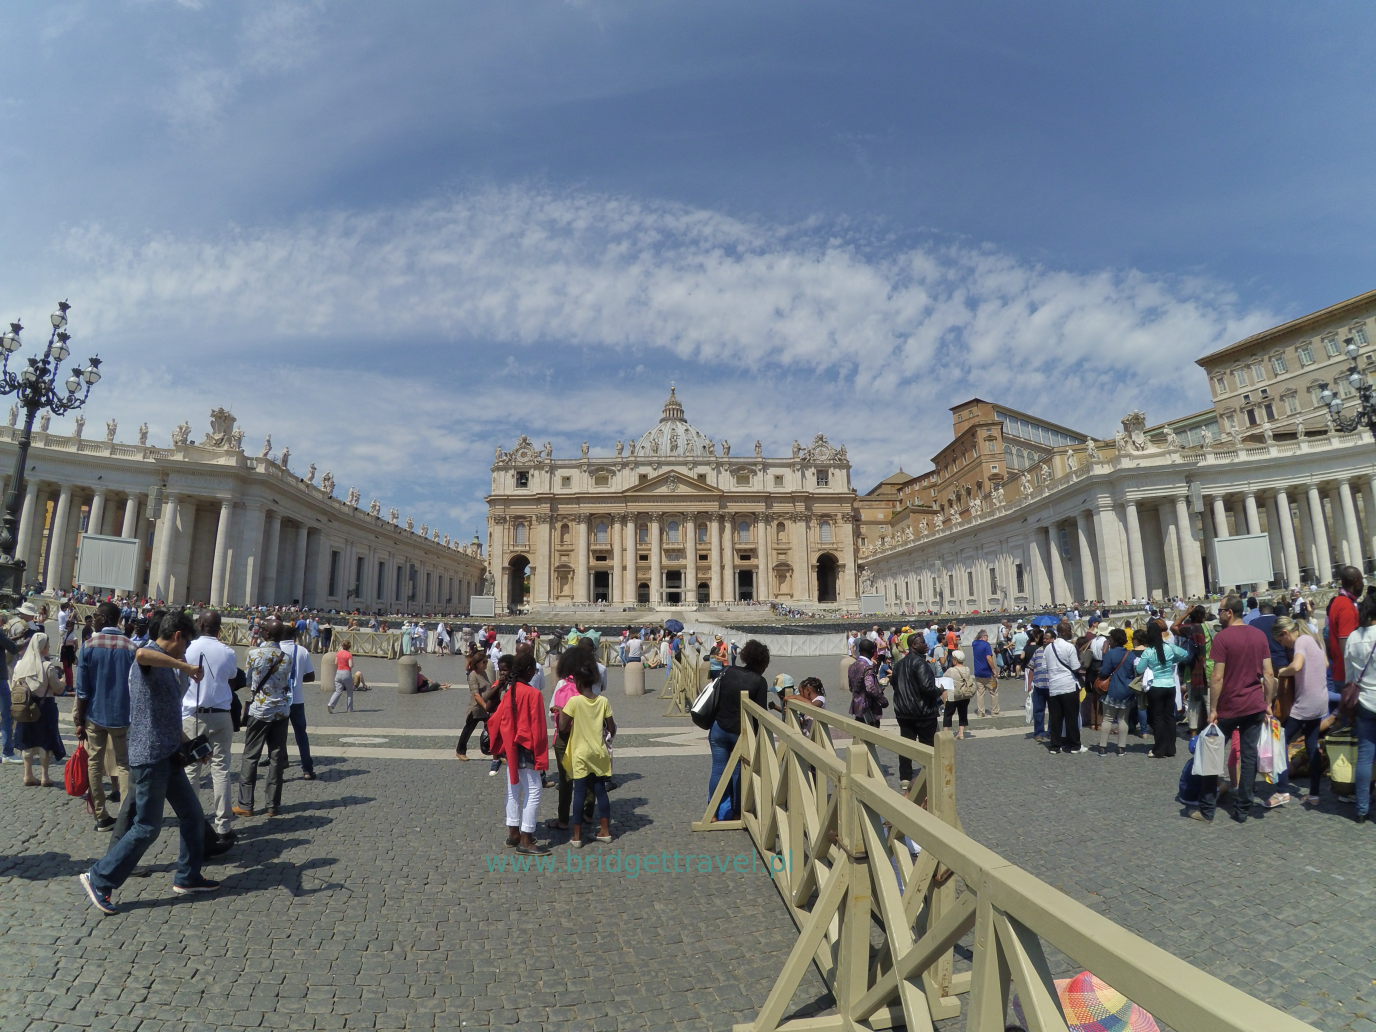 Plac i Katedra Św.Piotra, Watykan, Rzym, Włochy